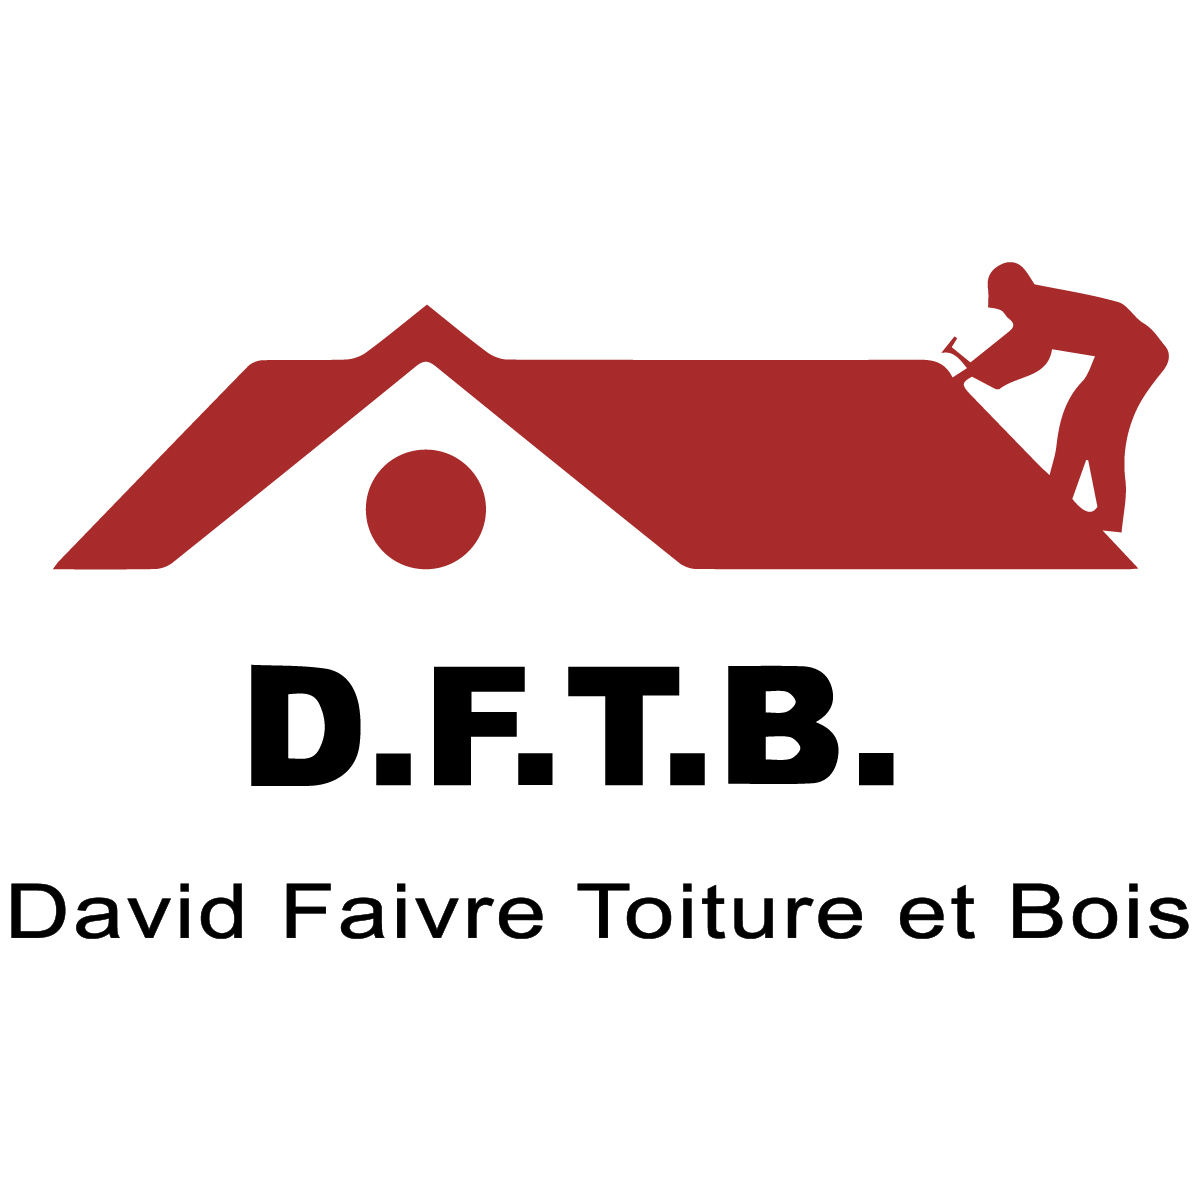 (c) David-faivre-toiture-bois.com